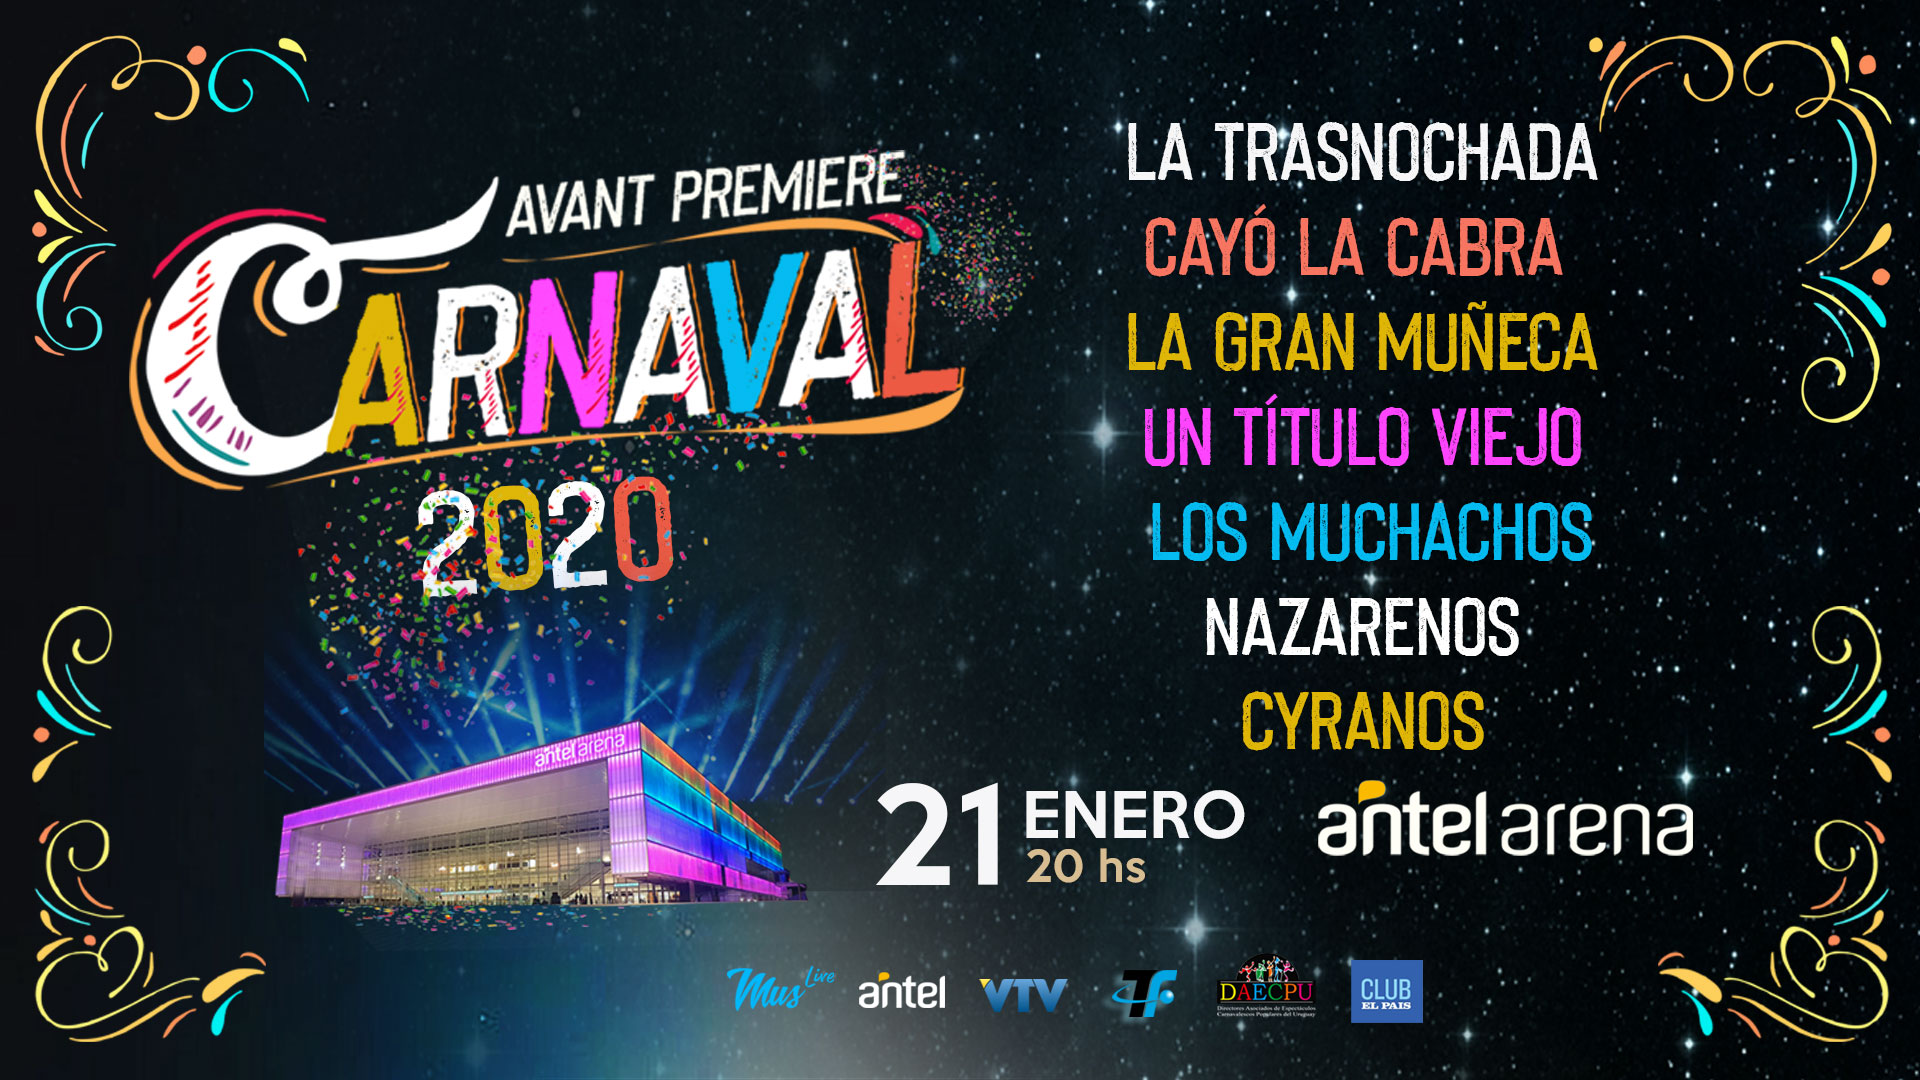 MUS Live - Carnaval 2020 Avant Premiere